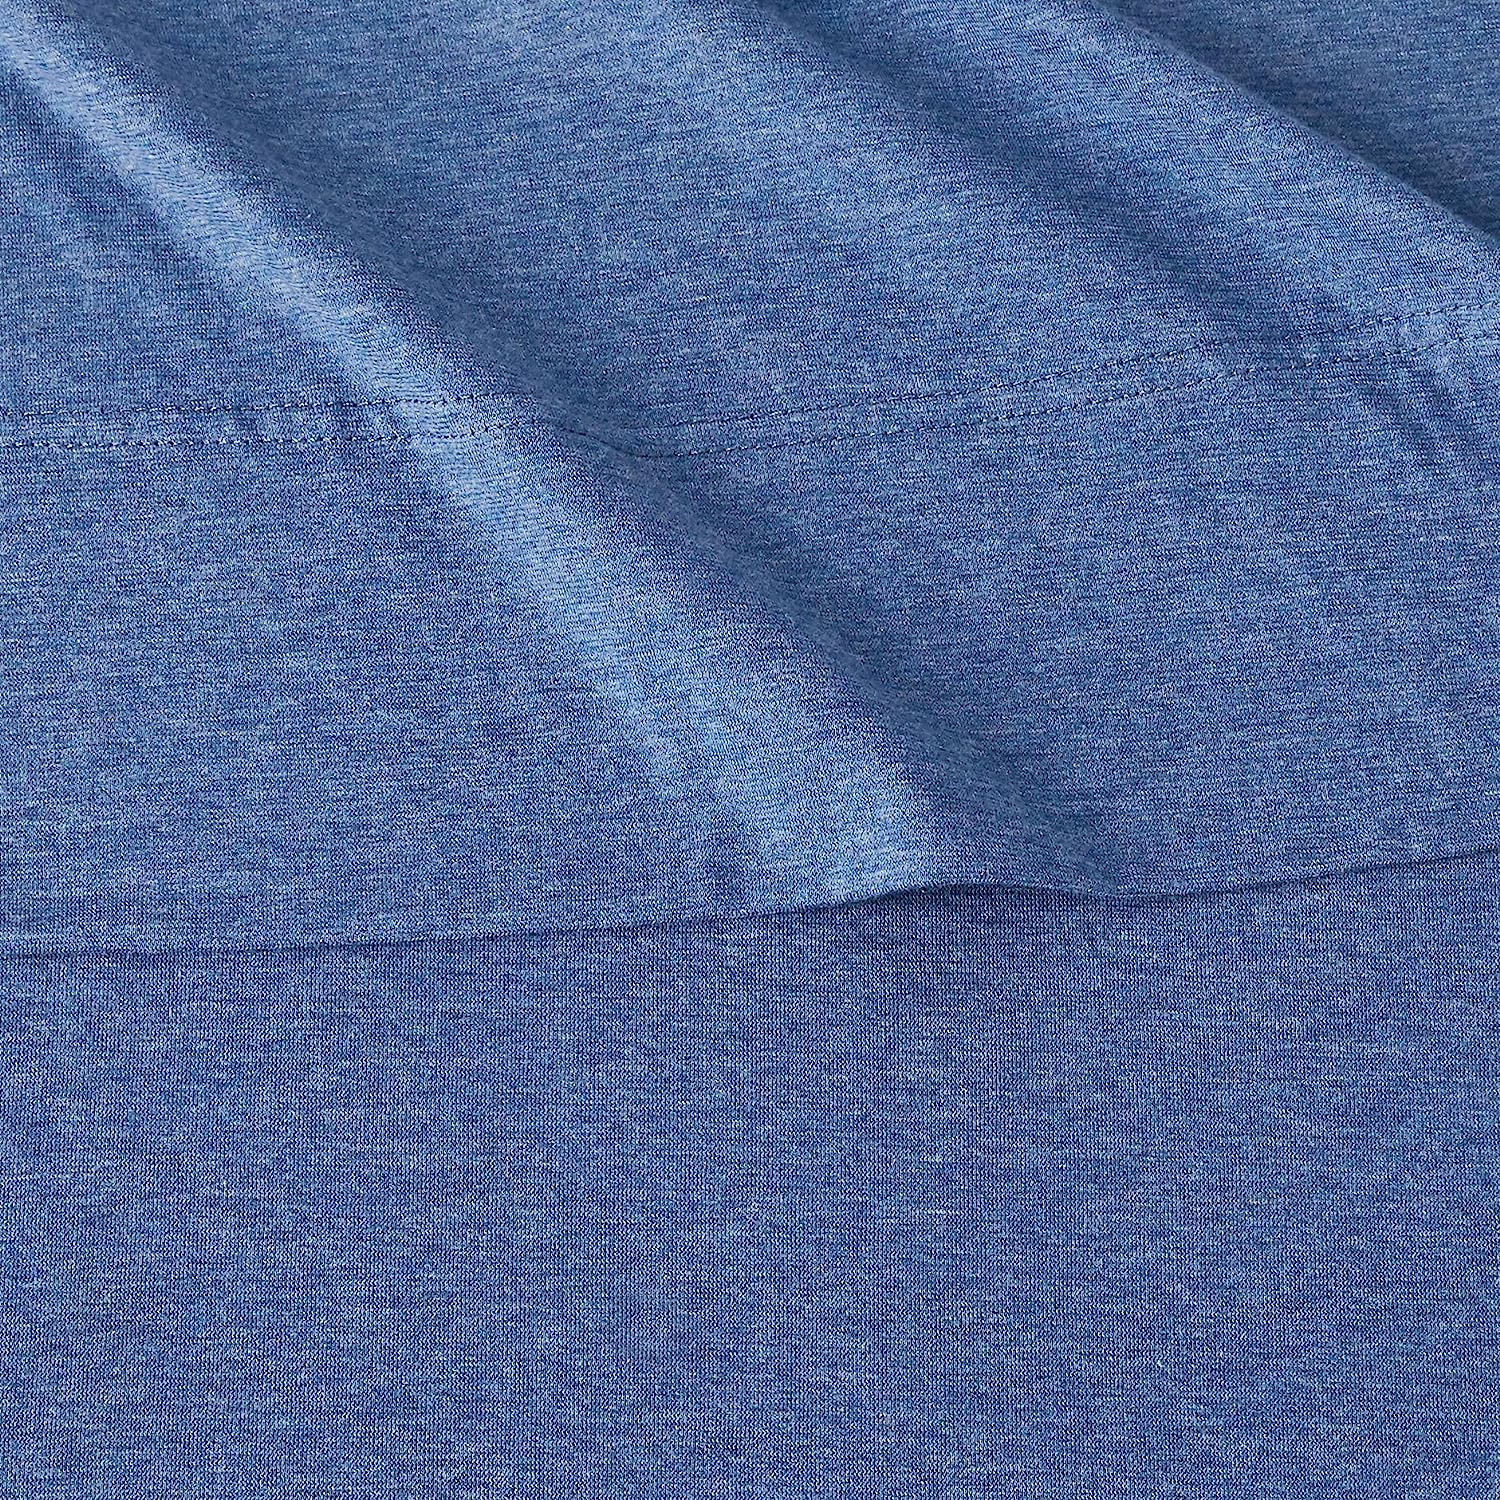 Tienda Juego de sábanas de jersey de algodón tamaño Queen color azul cambray